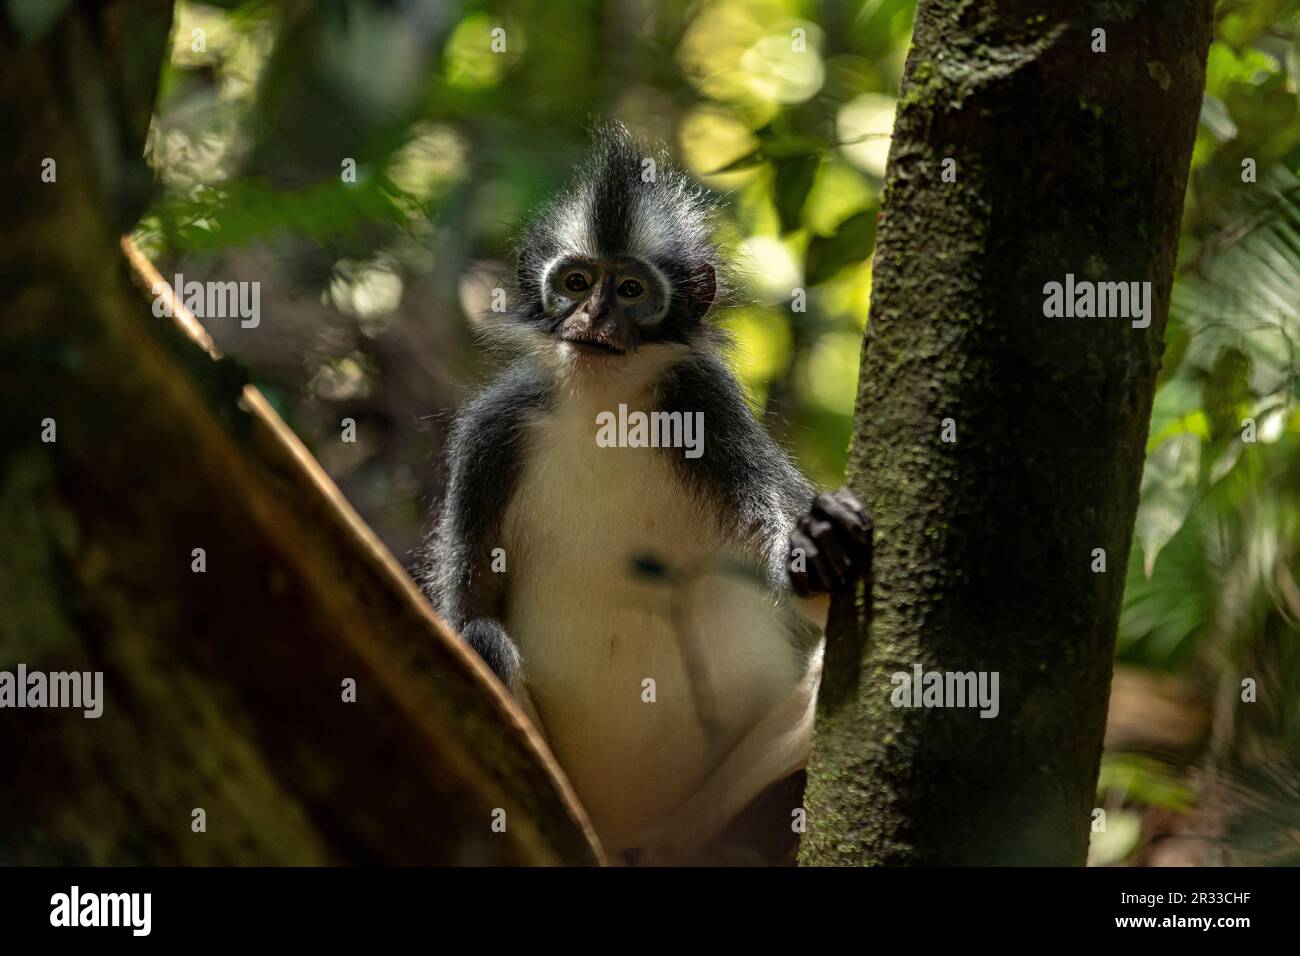 Thomas's langur (Thomas's Leaf Monkey) in Bukit Lawang, North Sumatra, Indonesia Stock Photo